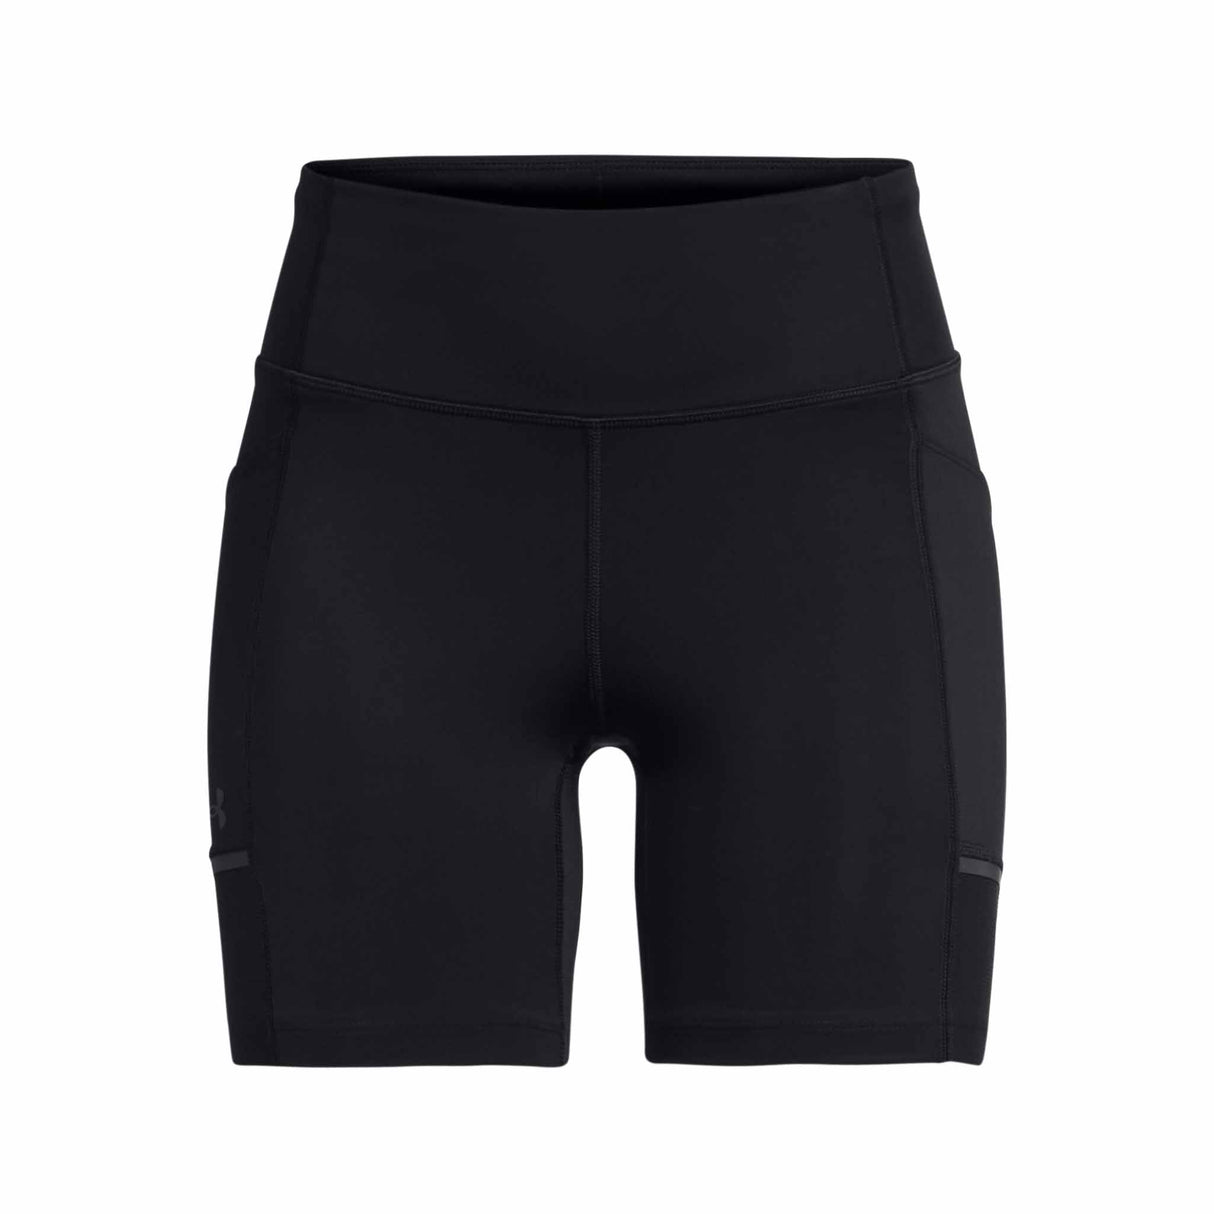 Under Armour Launch shorts cuissard 6 pouces femme  - black / reflective